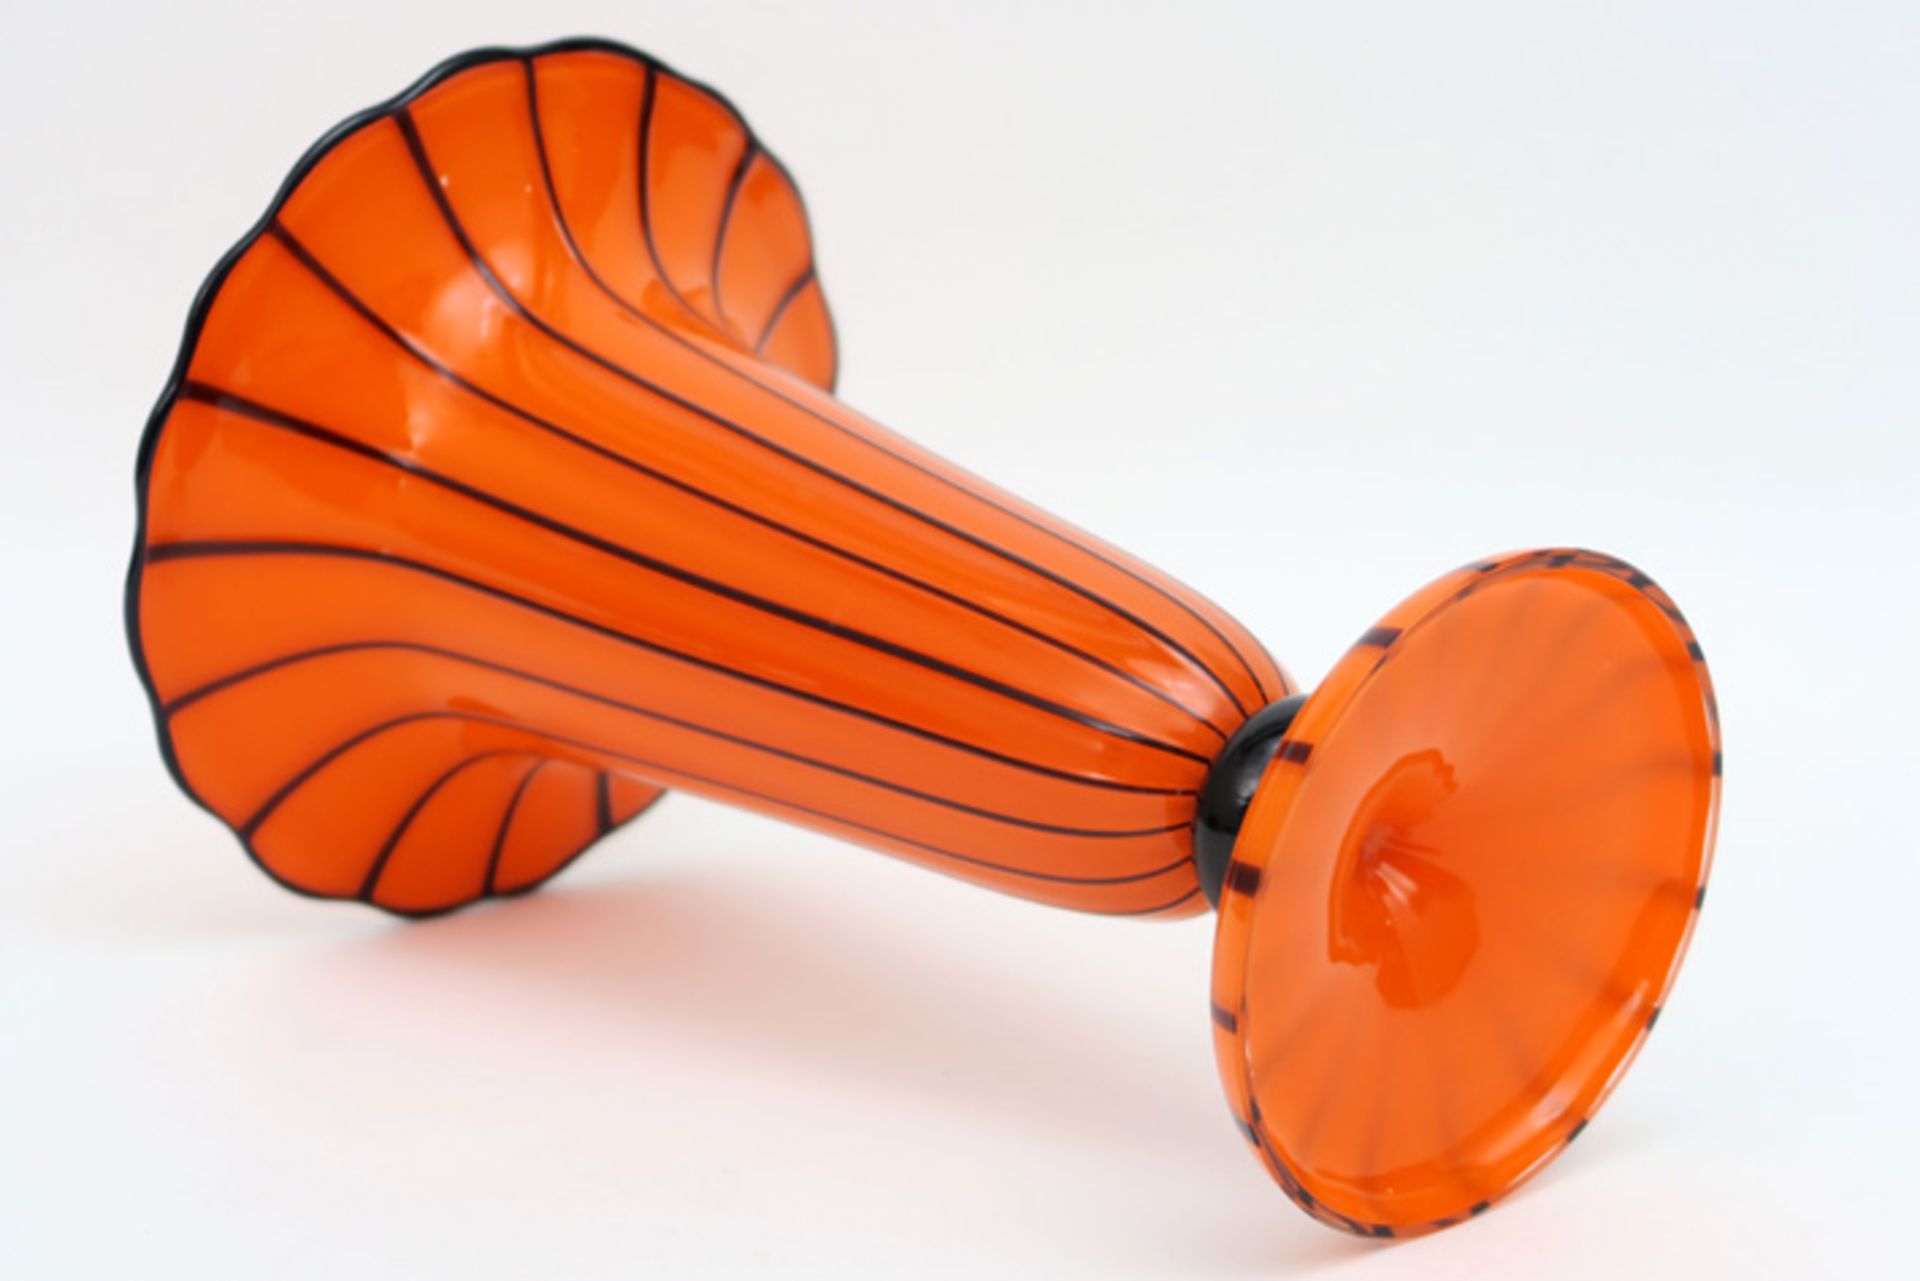 Mogelijk Wiener Werkstätte -Jugendstil vaas met sierlijke kelkvorm in oranje en zwart glas - - Image 2 of 3